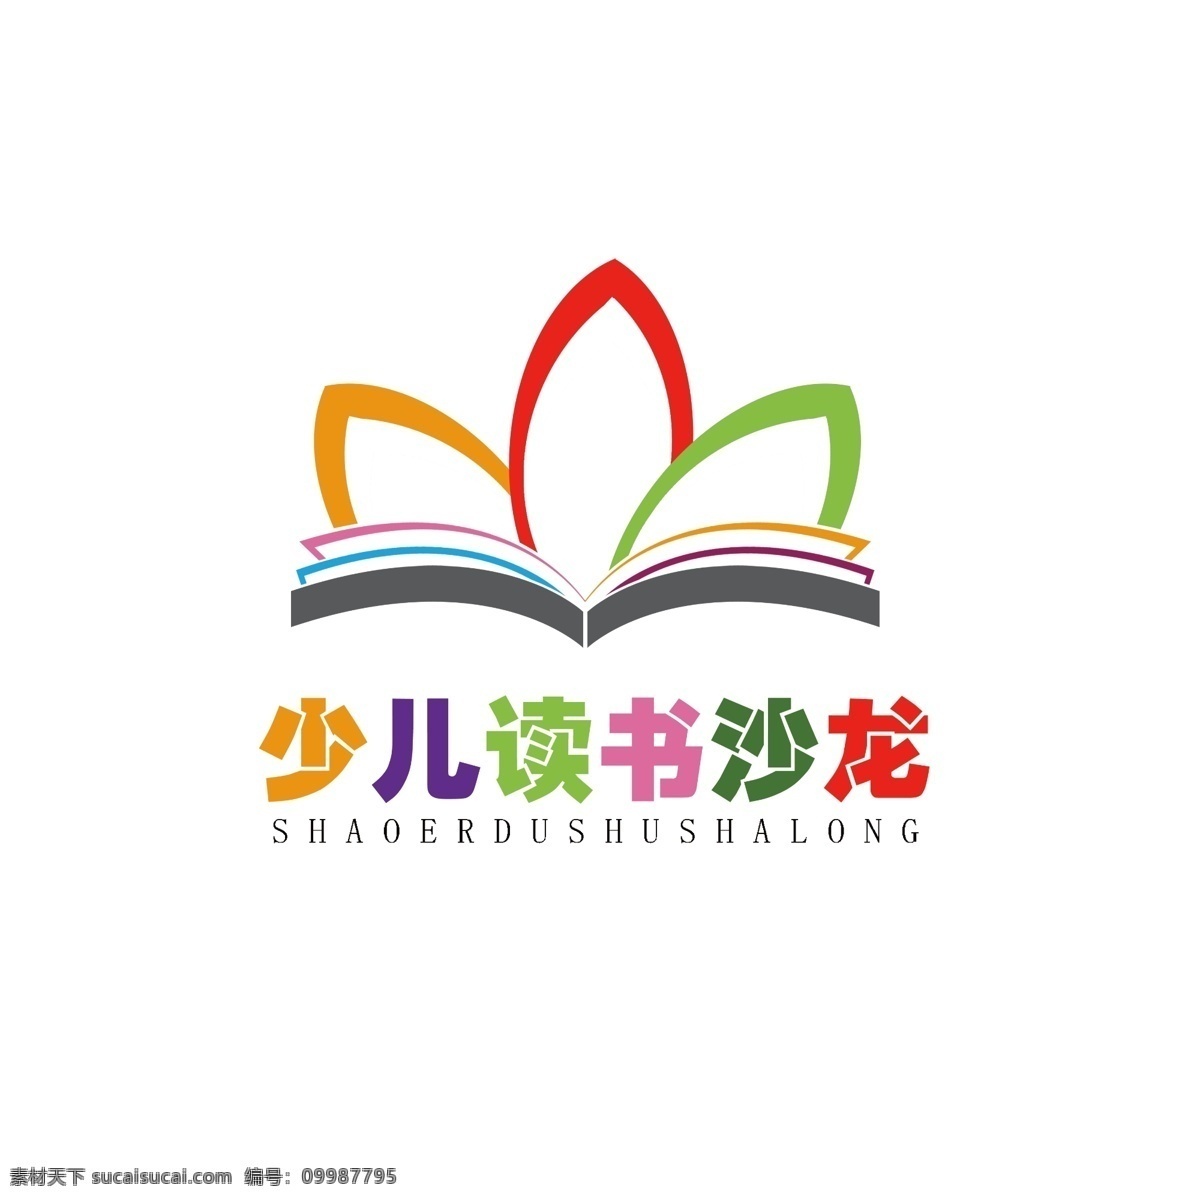 标志设计 少儿图书 炫彩标志 读书会 书本 少儿沙龙 可爱 标志 logo设计